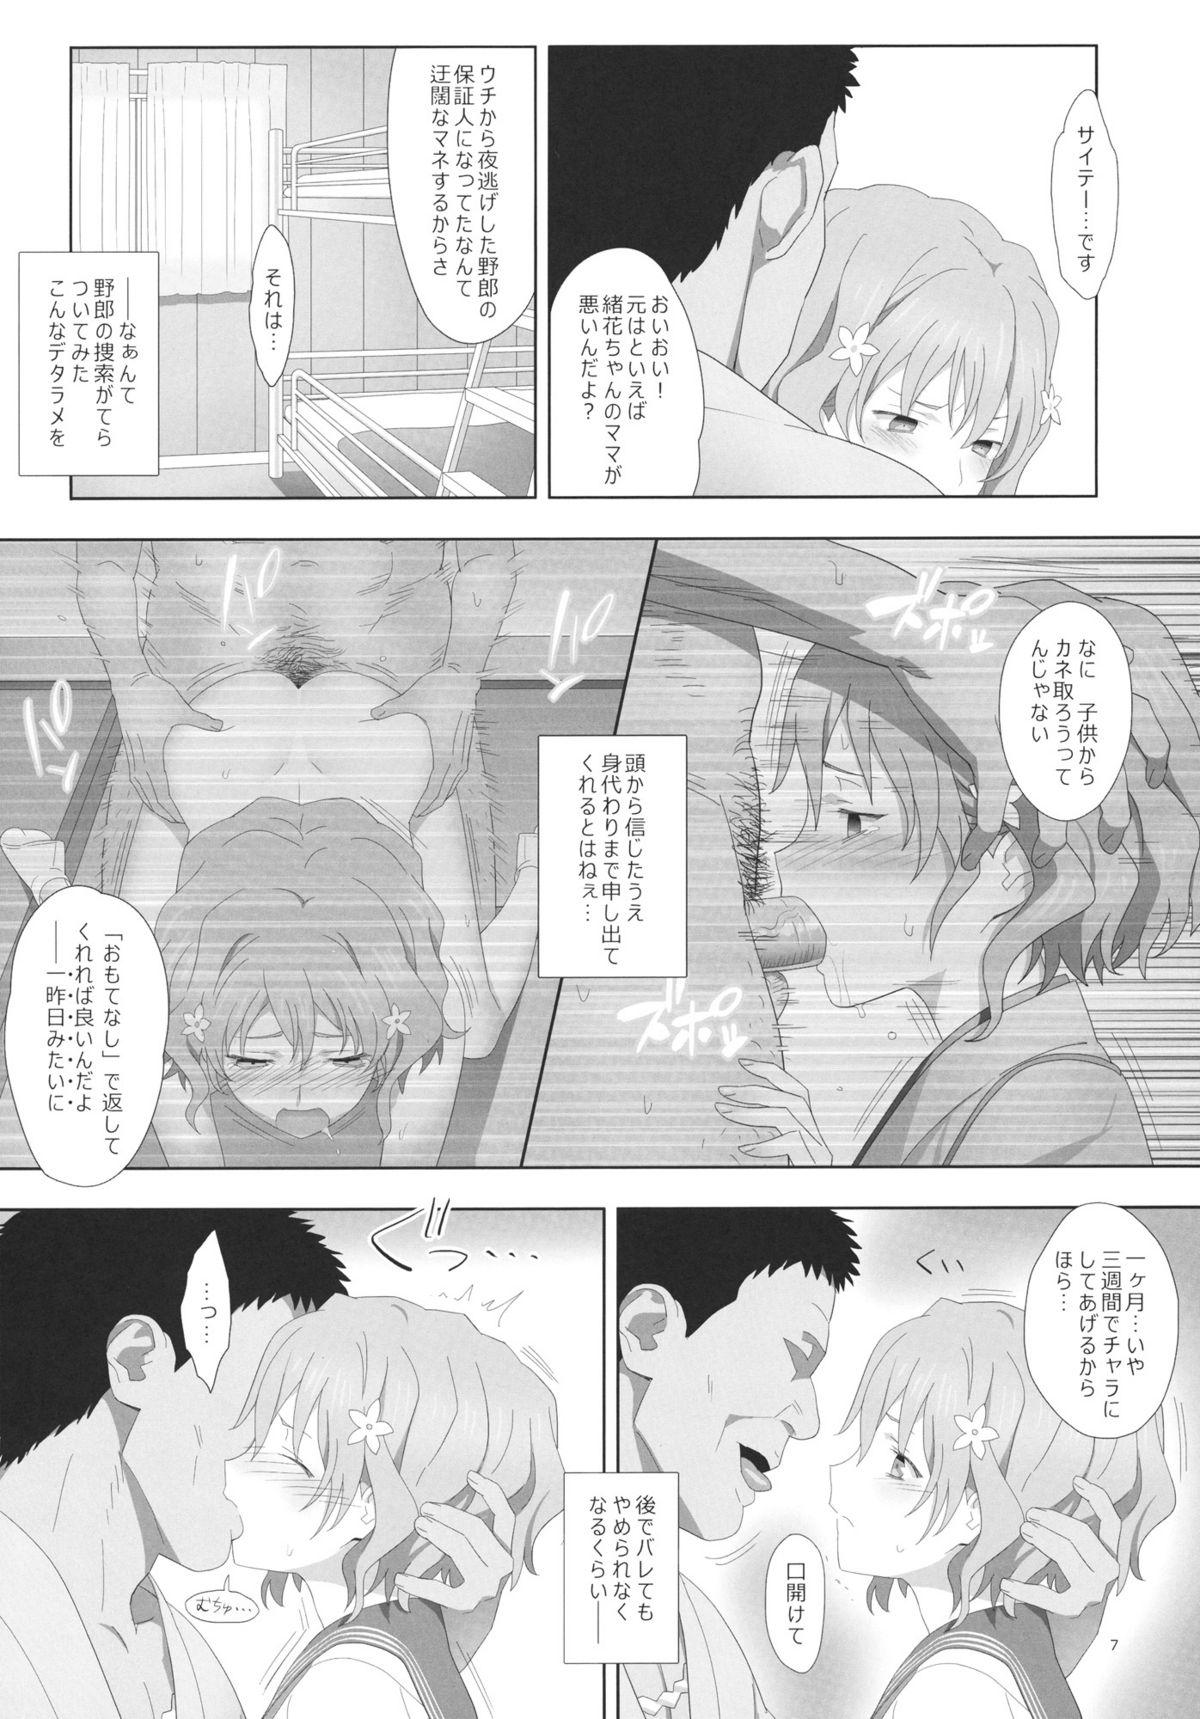 Sixtynine Natsu, Ryokan, Shakkintori. - Hanasaku iroha Sharing - Page 6